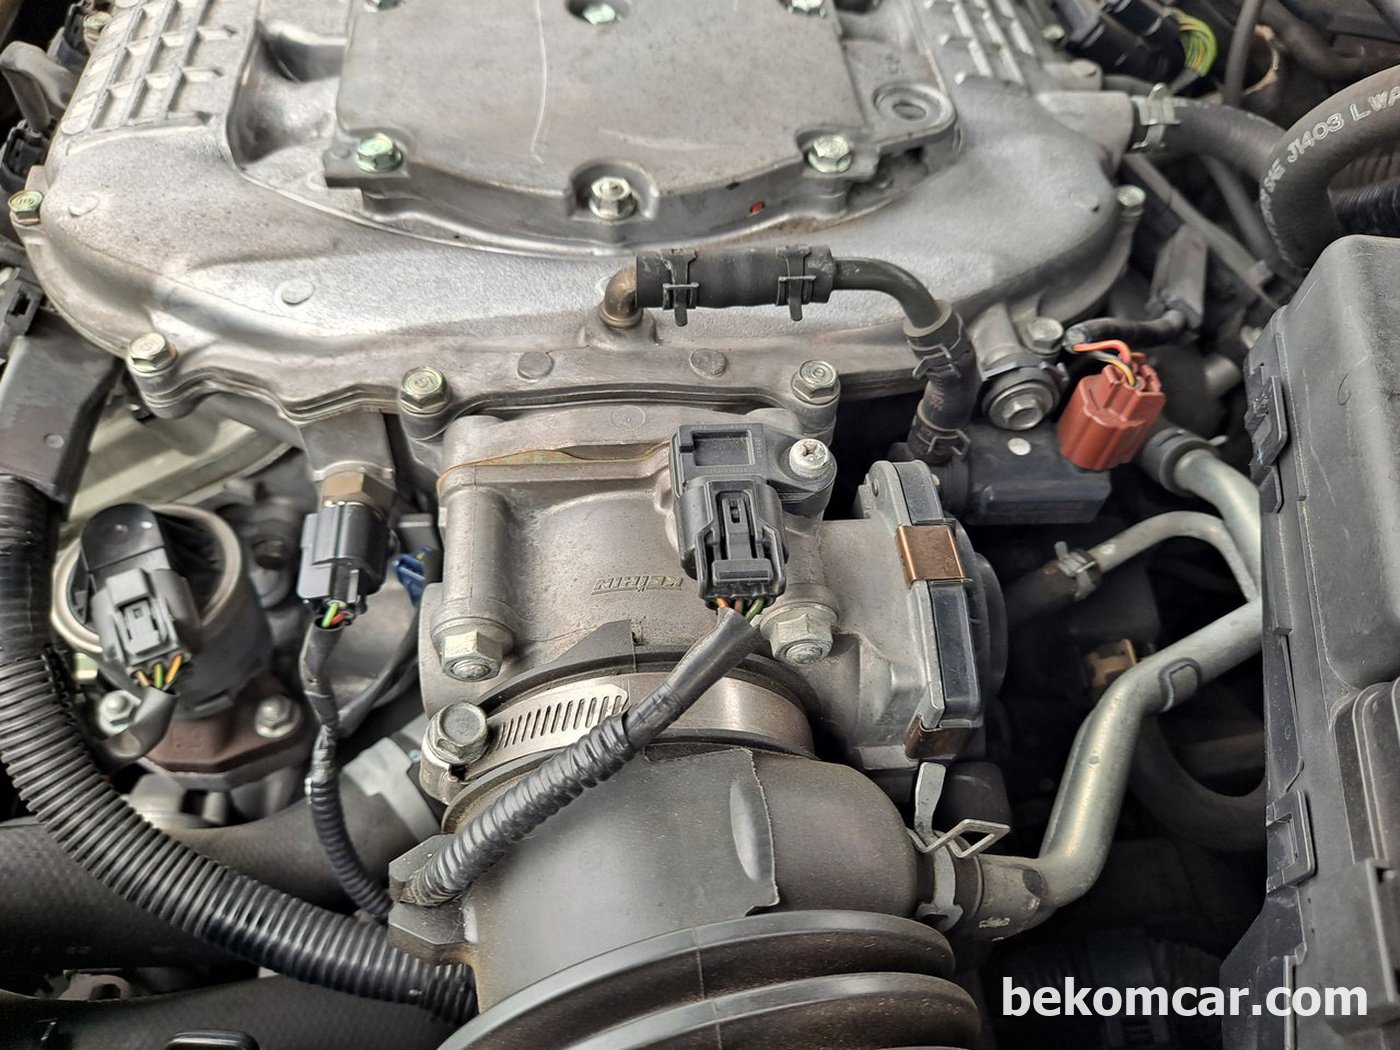 퍼지벨브 및 MAP센서등 특이사항 점검|贝科姆汽车 (bekomcar)